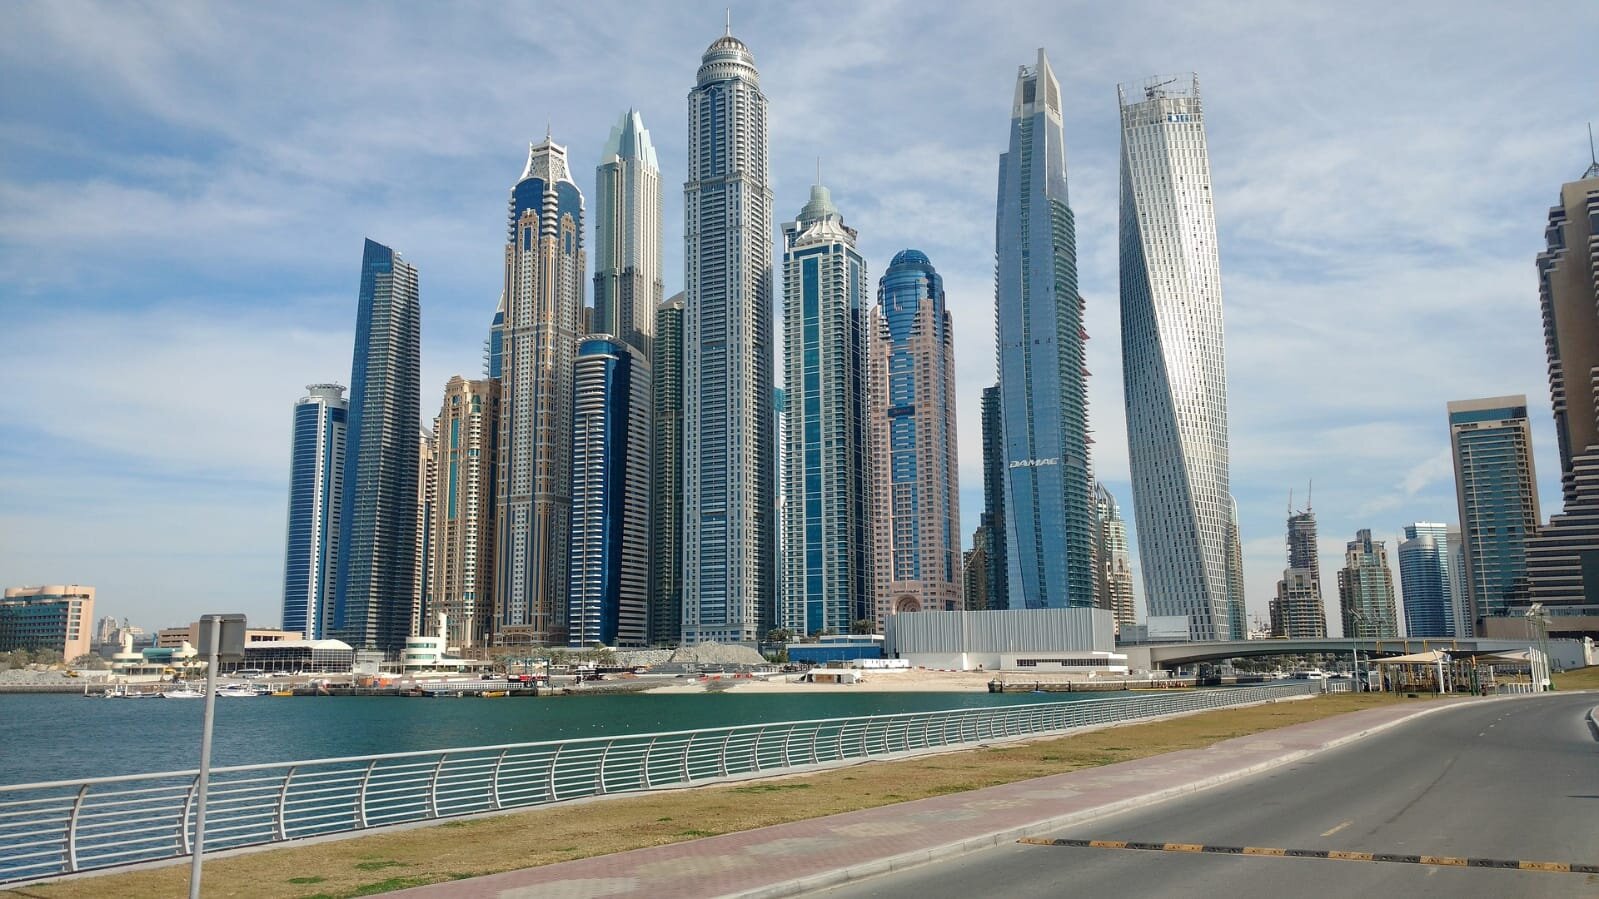 سوق العقارات على المخطط في دبي توفر للمستثمرين في أنحاء العالم فرصاً مميزة وعوائد كبيرة